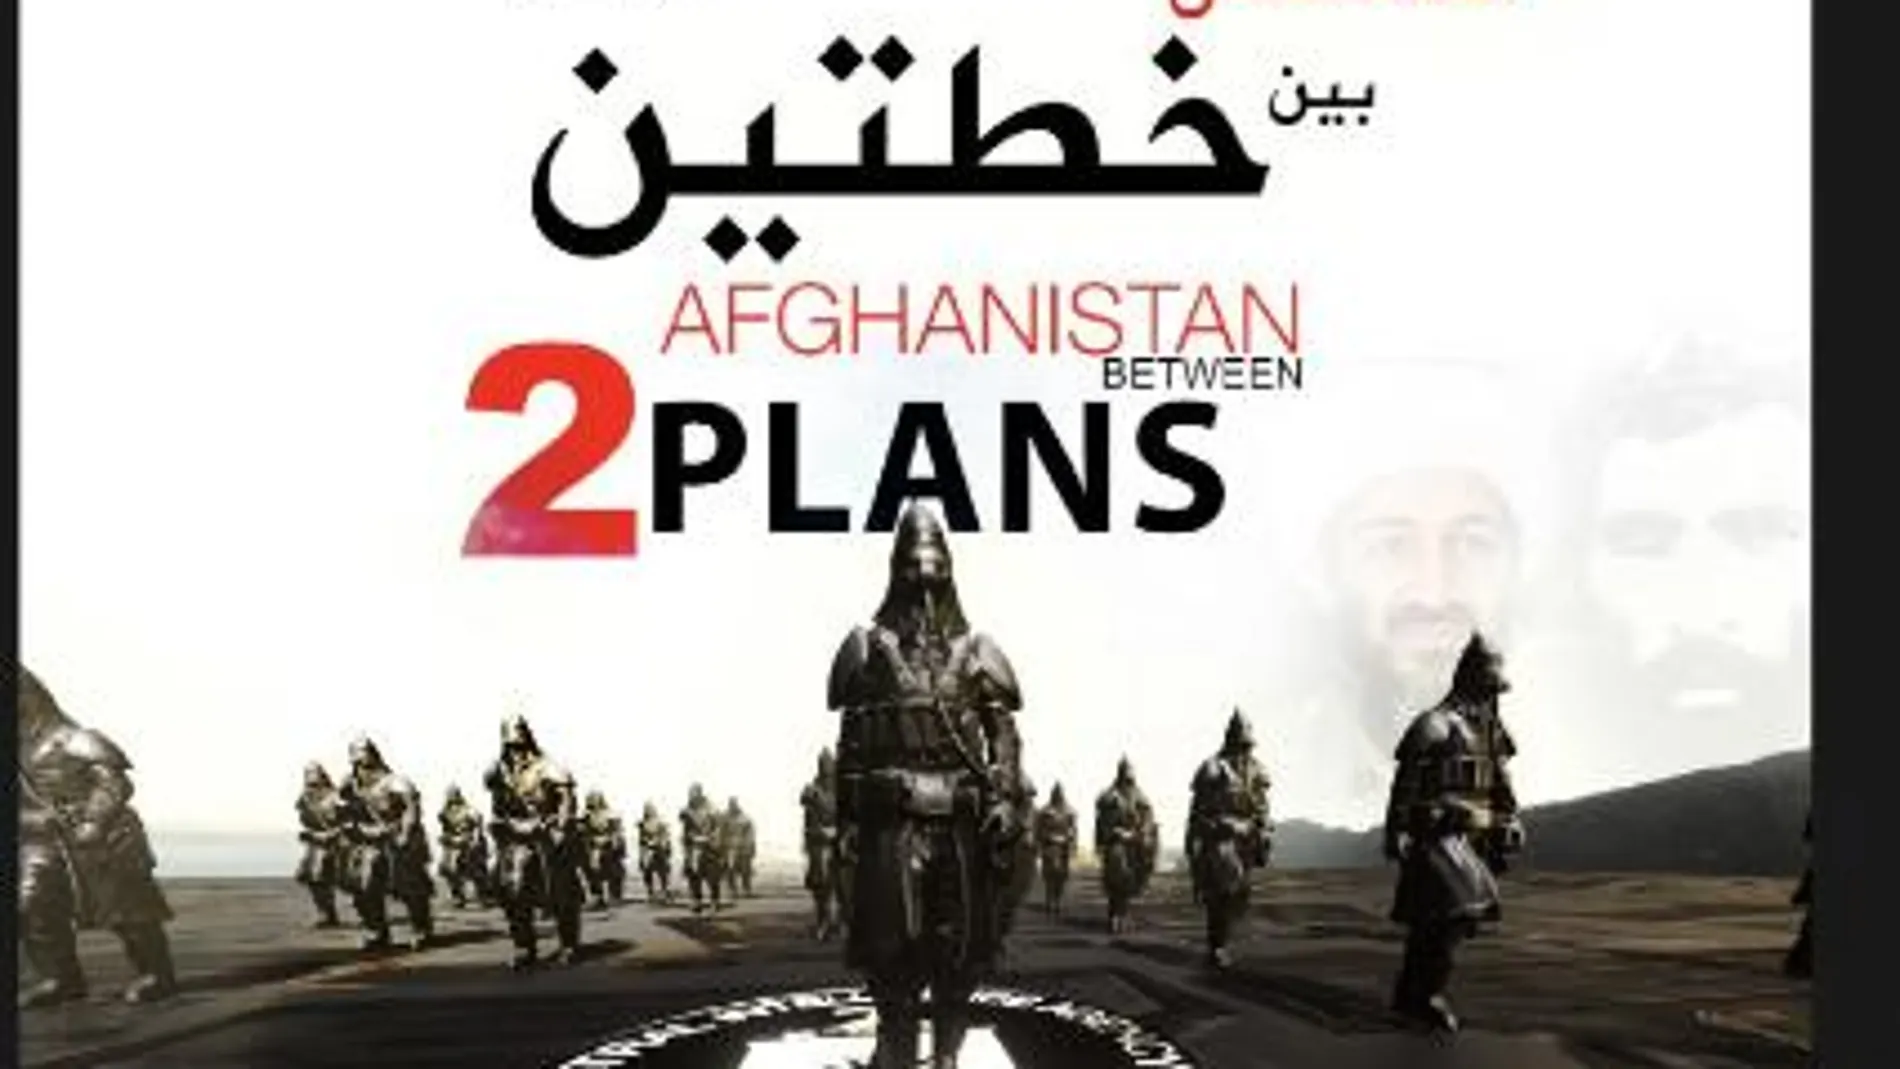 Cartel del estado Islámico que simboliza la colaboración talibán con la CIA. "Afganistán, entre dosplanes" dicen en referencia a un complot contra ellos